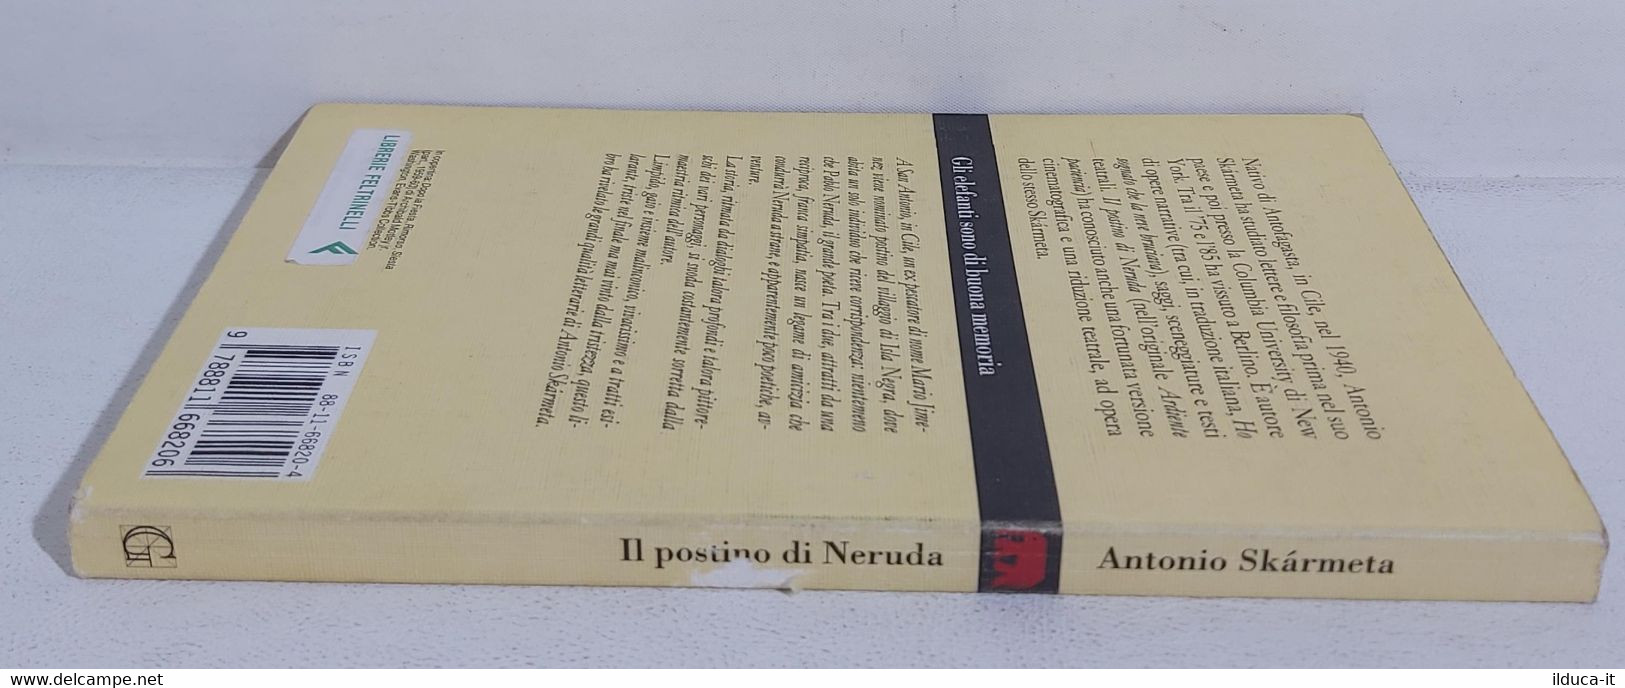 I106604 Antonio Skarmeta - Il Postino Di Neruda - Garzanti 1994 - Novelle, Racconti